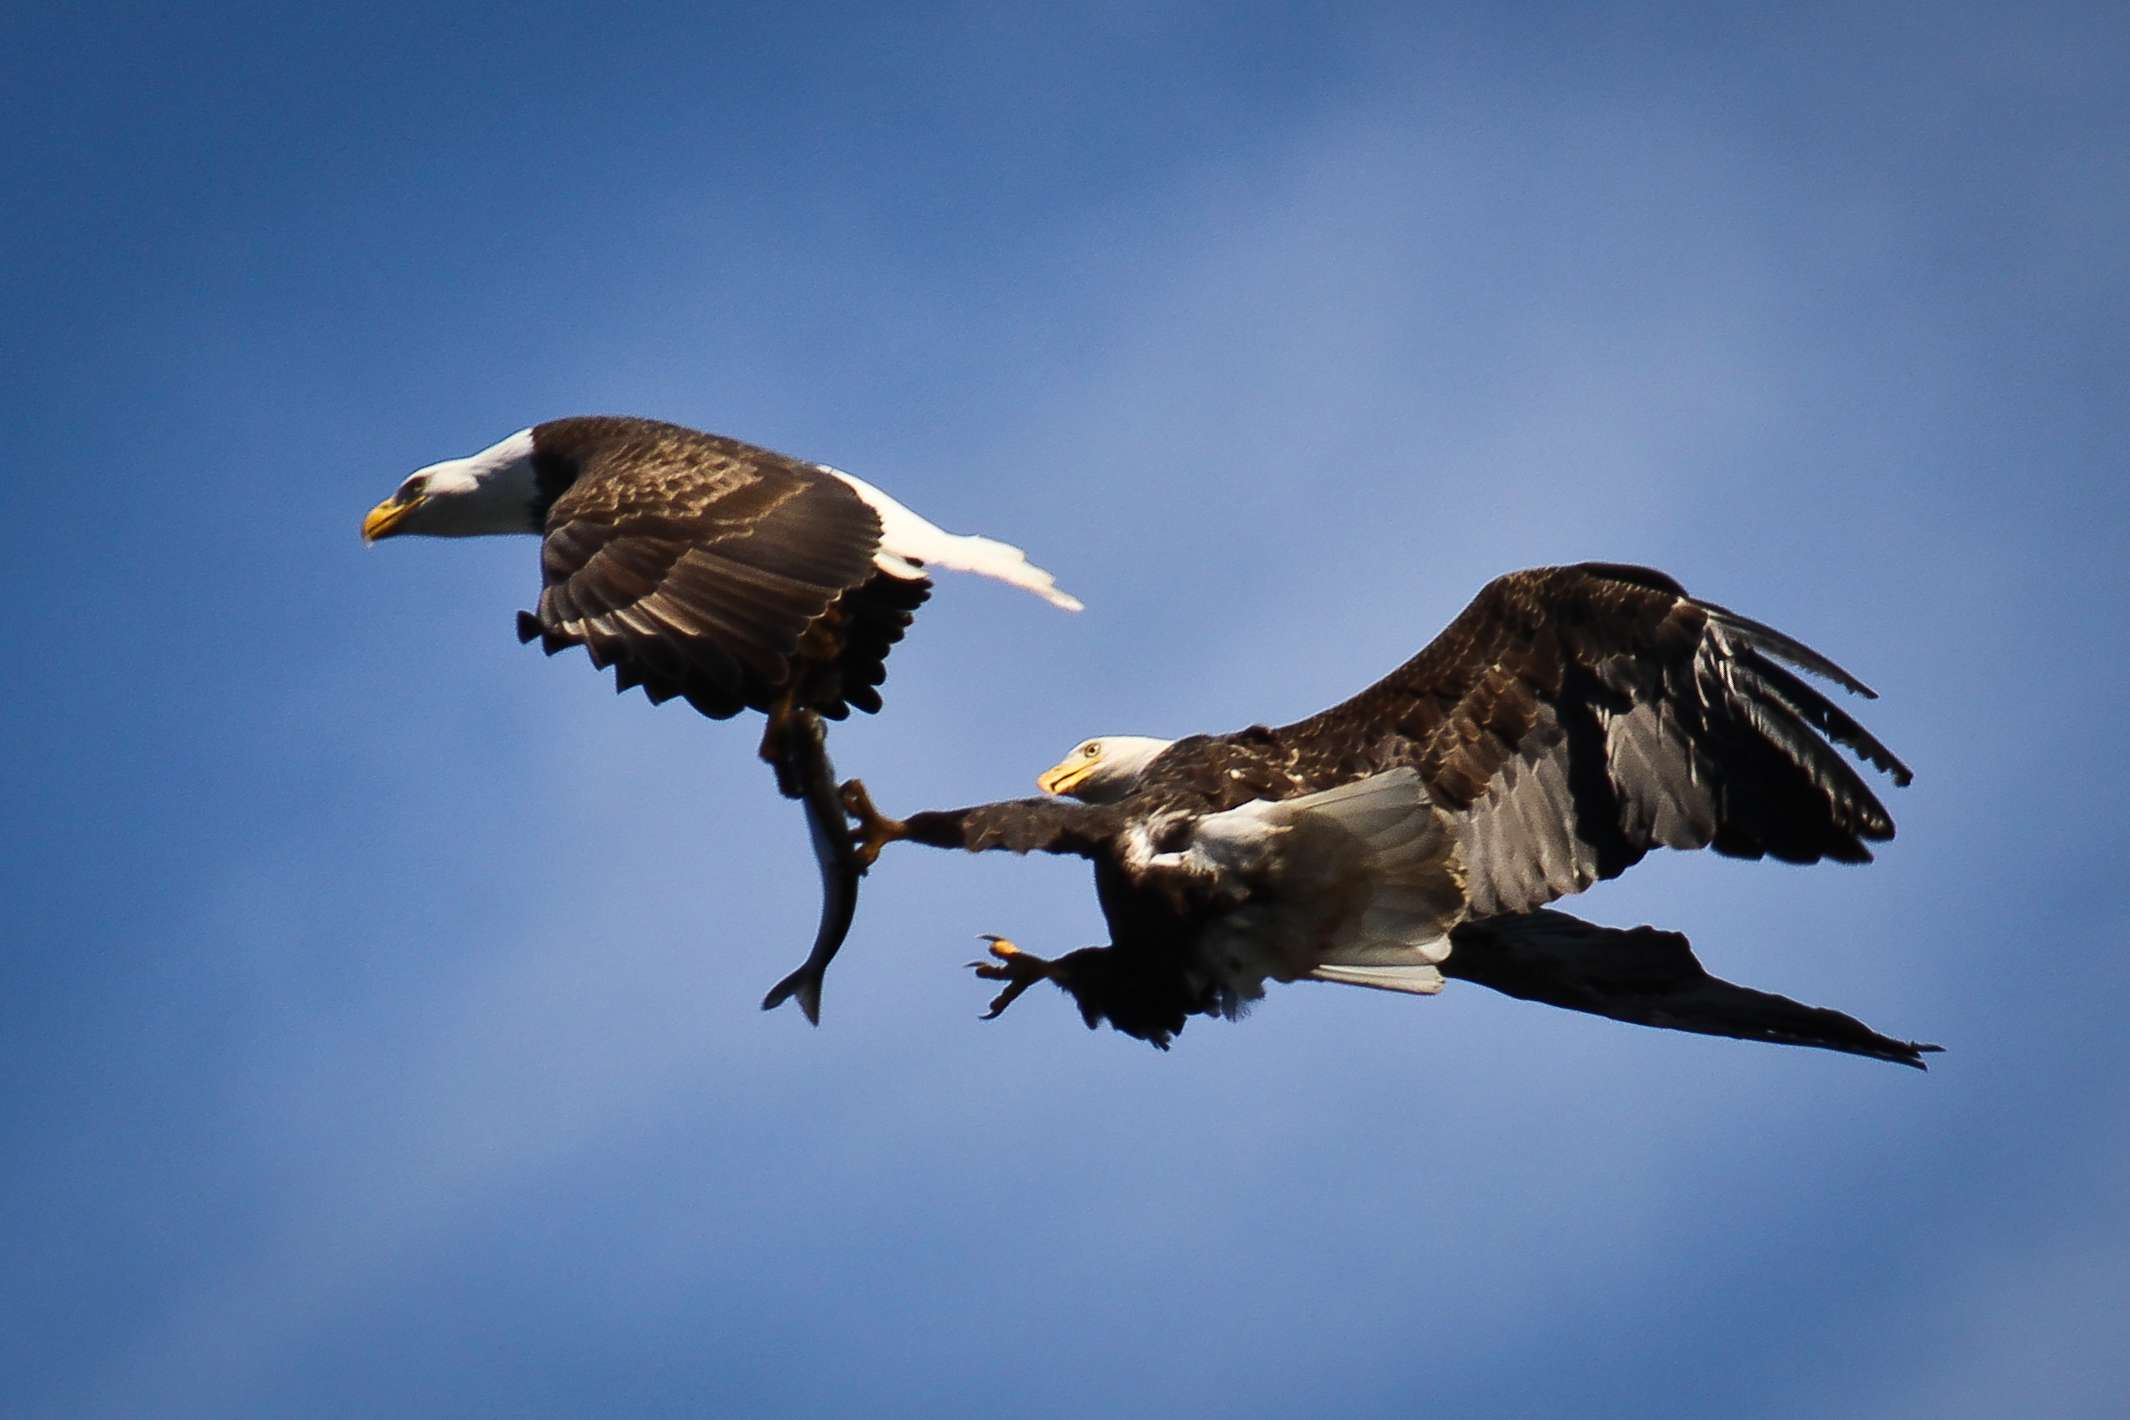 Águila calva robando un pez a otra águila en pleno vuelo